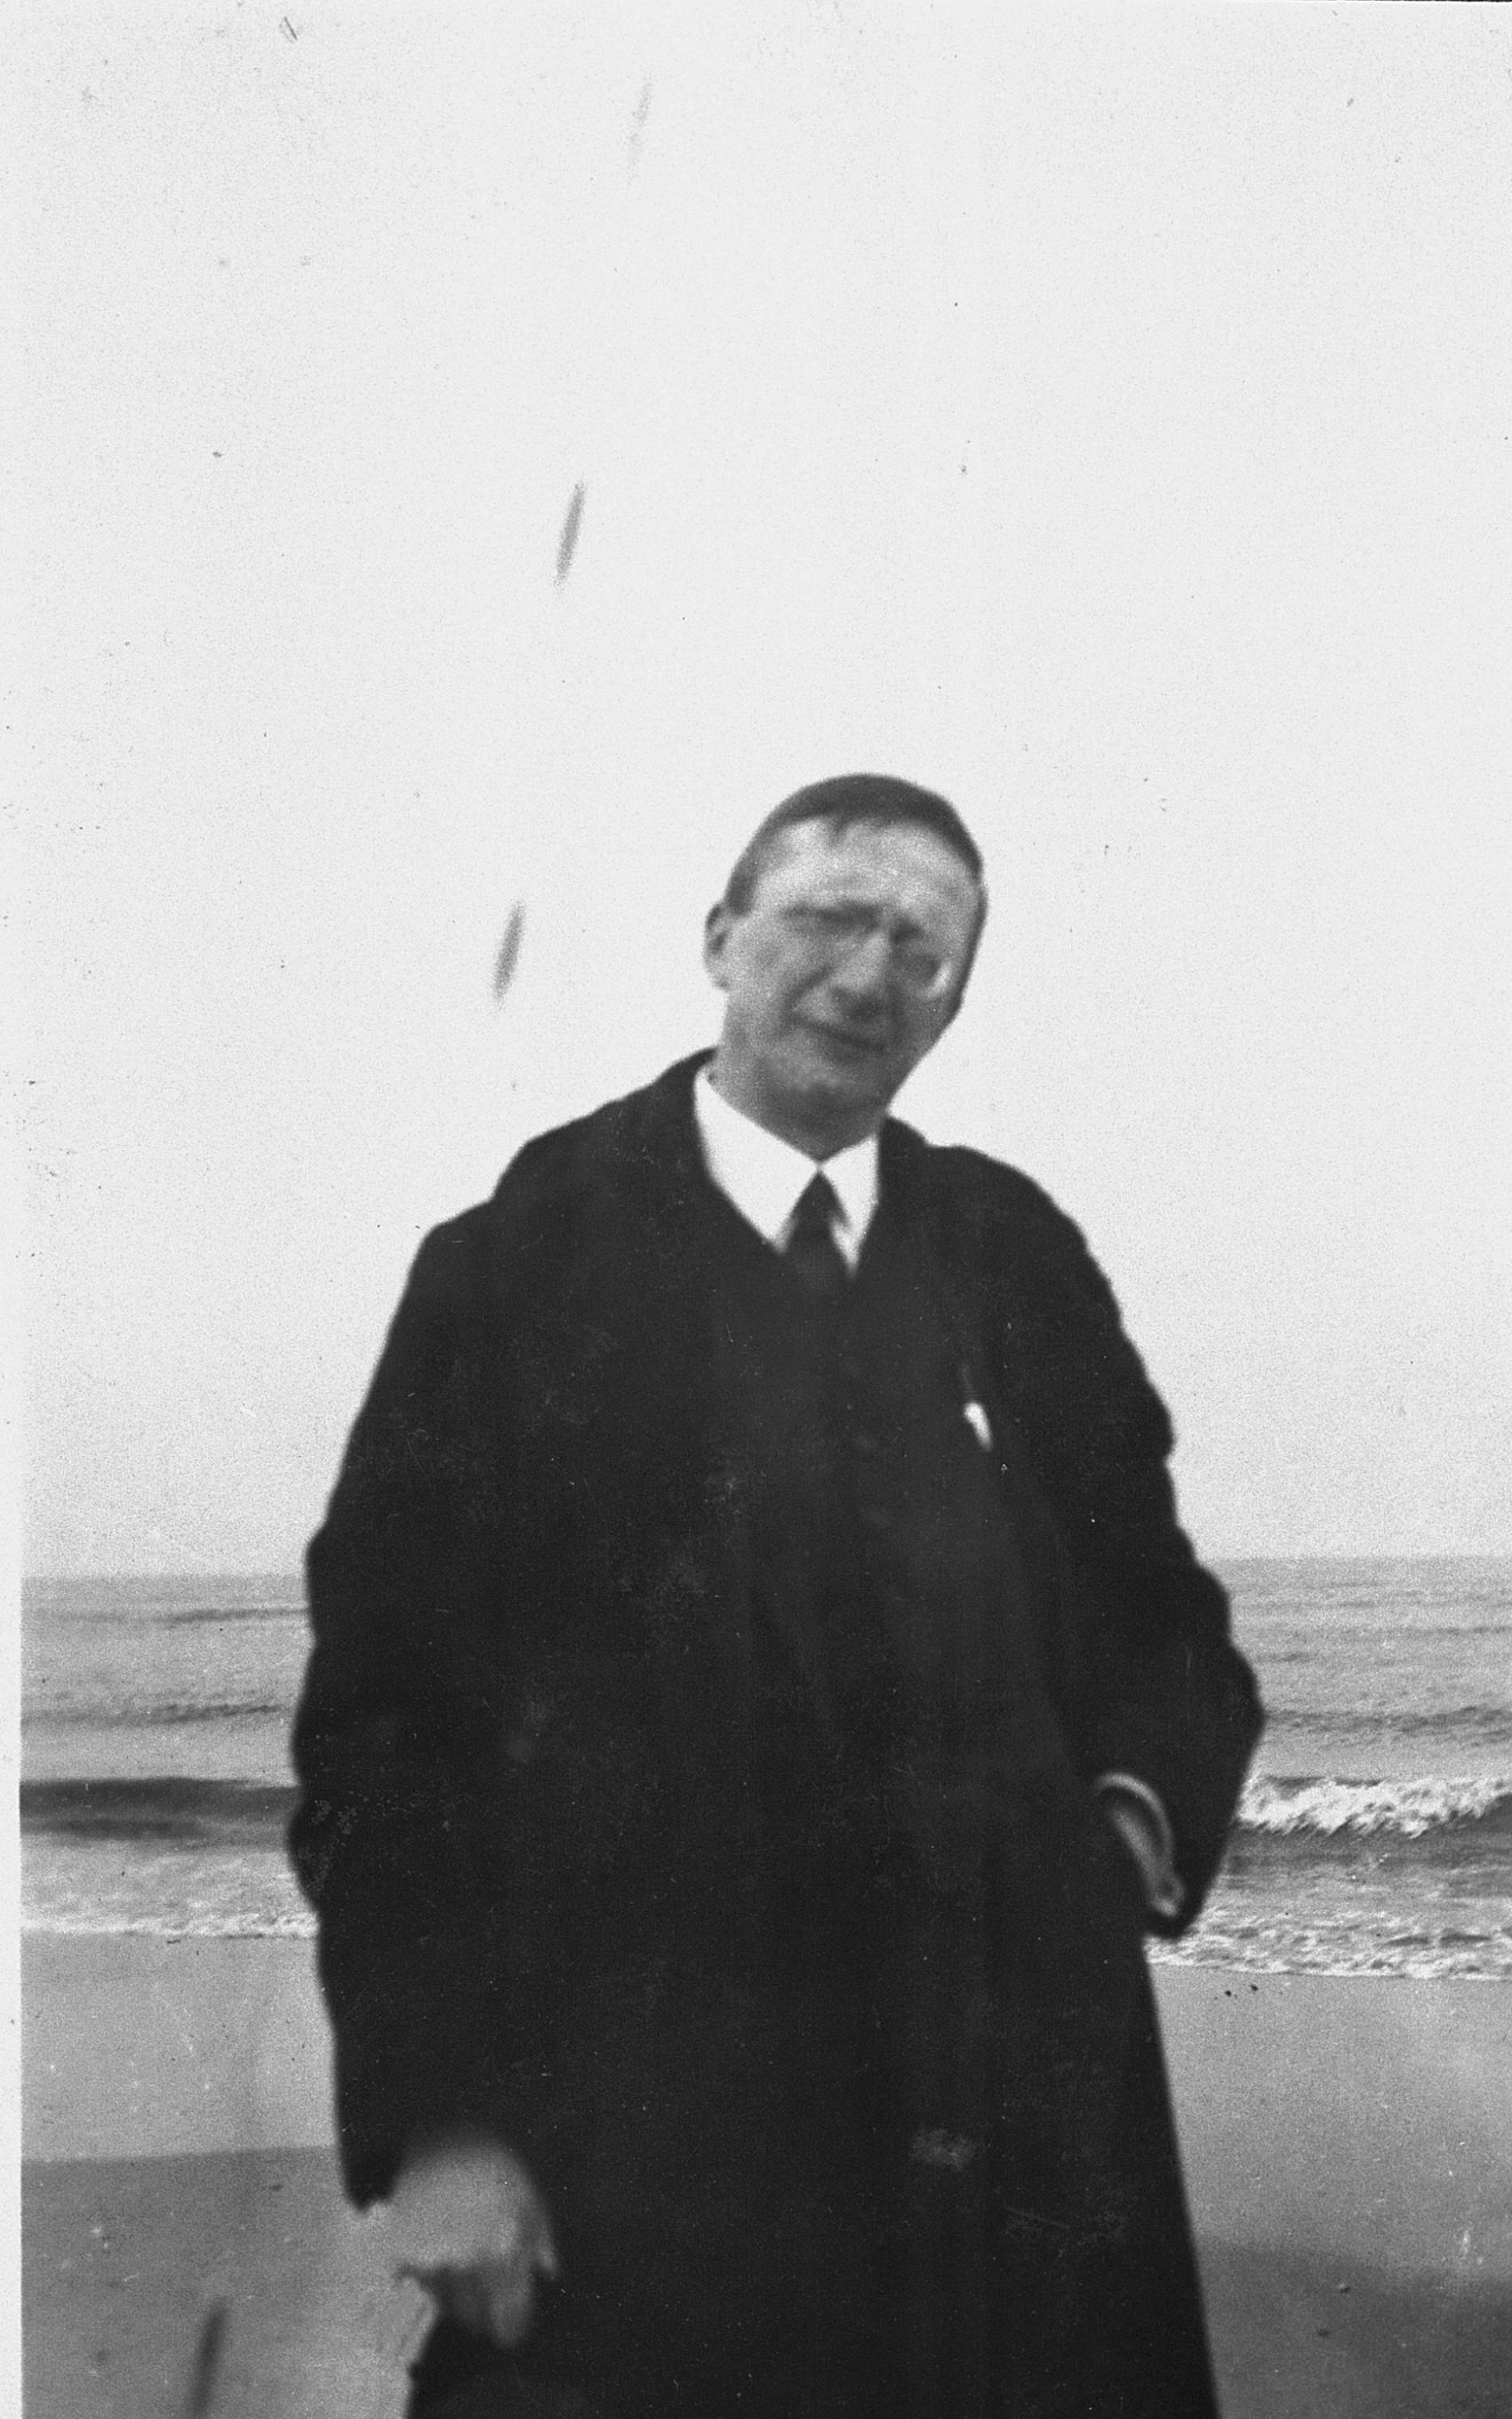 Alte schwarz/weiß Aufnahme von Alfred Döblin vor der Ostsee.